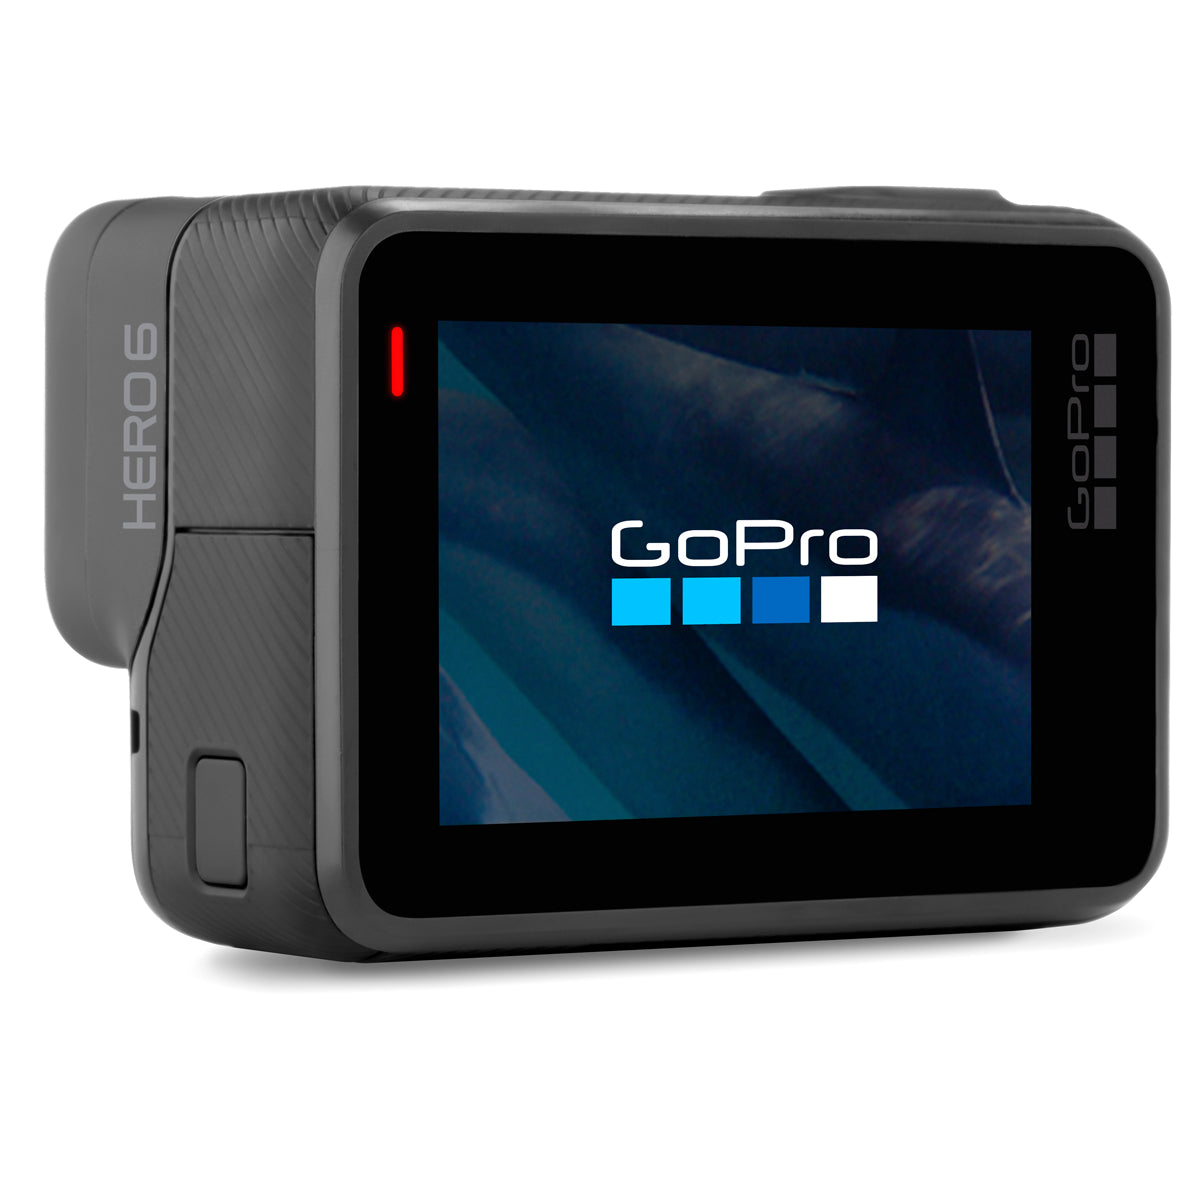 GoPro HERO6 Black 4K Action Camera